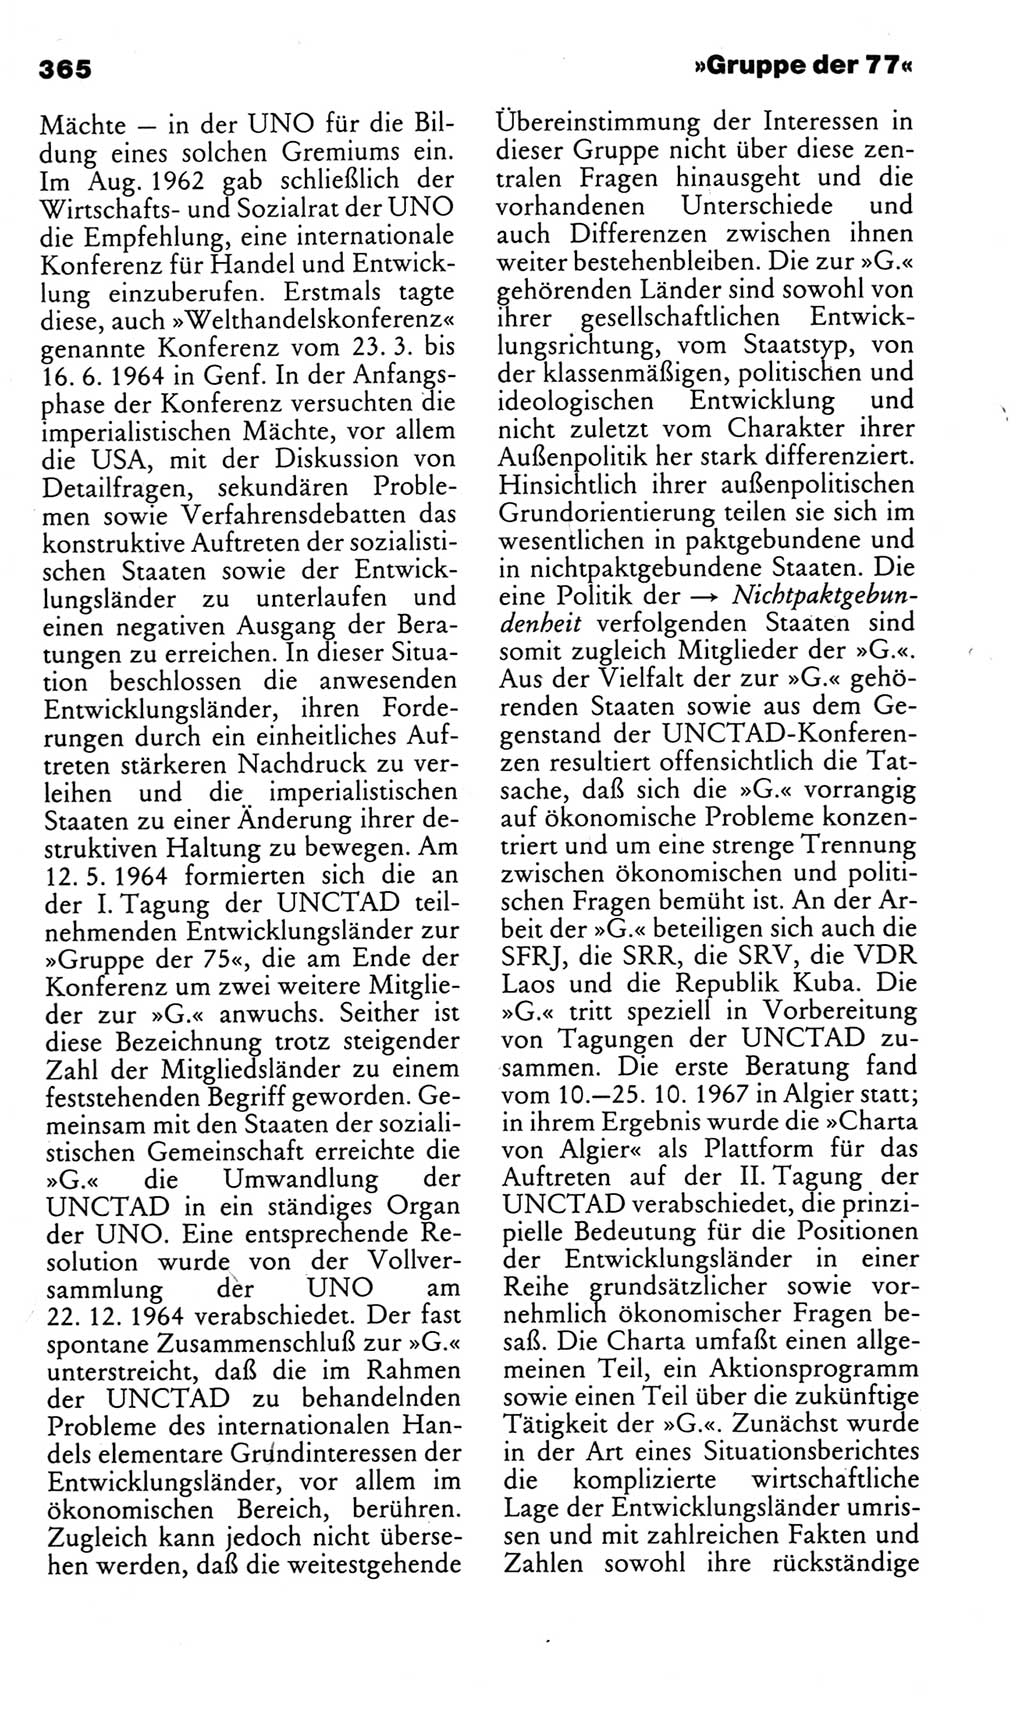 Kleines politisches Wörterbuch [Deutsche Demokratische Republik (DDR)] 1983, Seite 365 (Kl. pol. Wb. DDR 1983, S. 365)